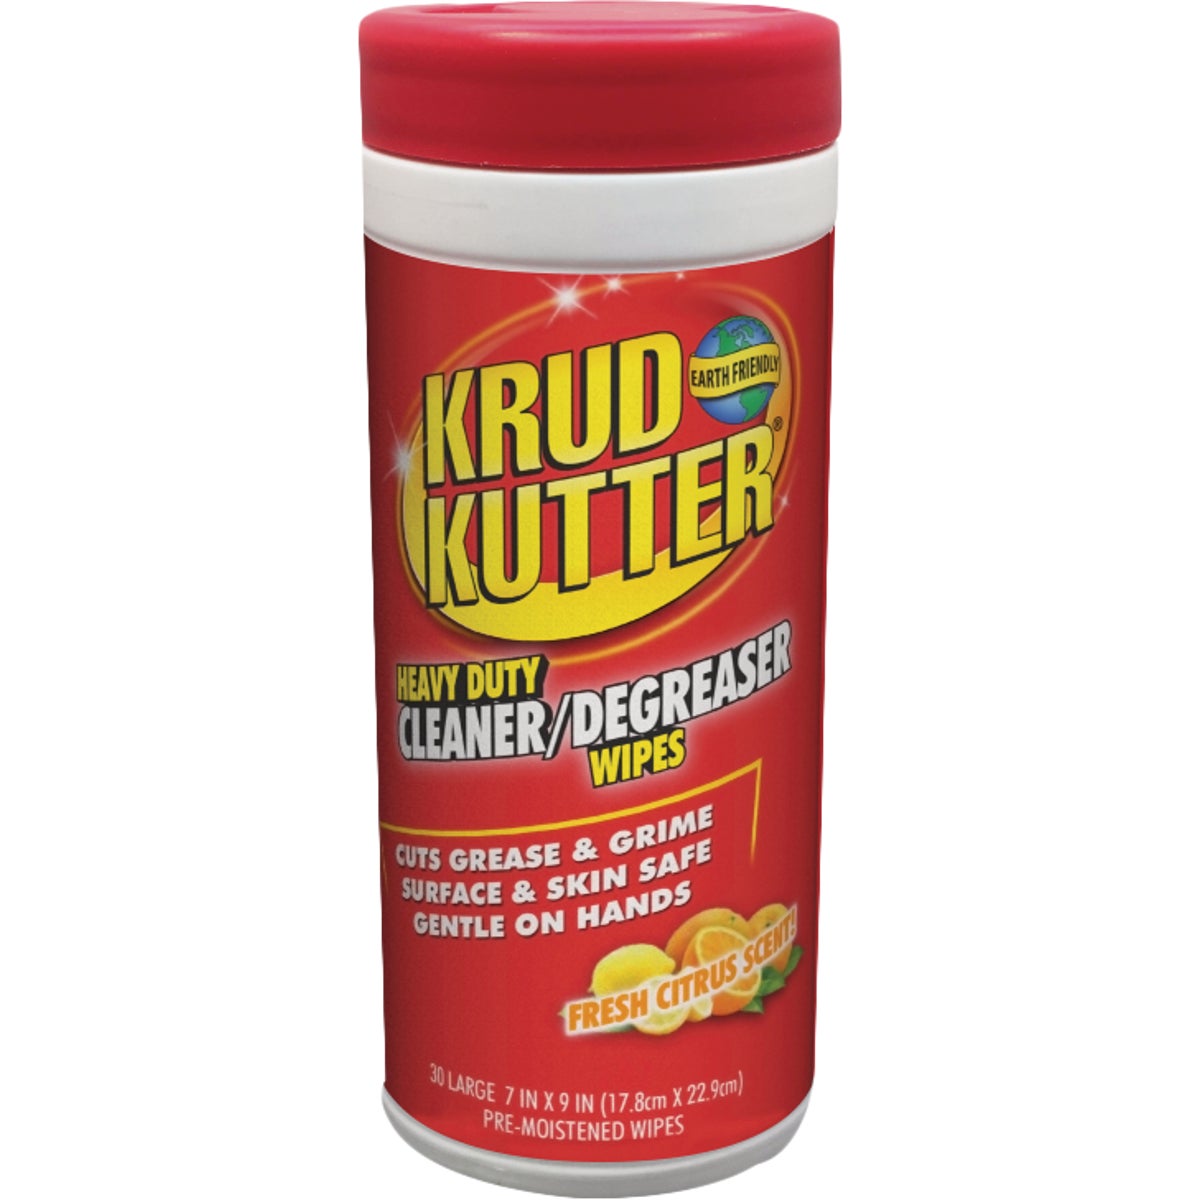 Krud Kutter Heavy Duty Fresh Citrus Cleaner Degreaser Wipe (30 Count)